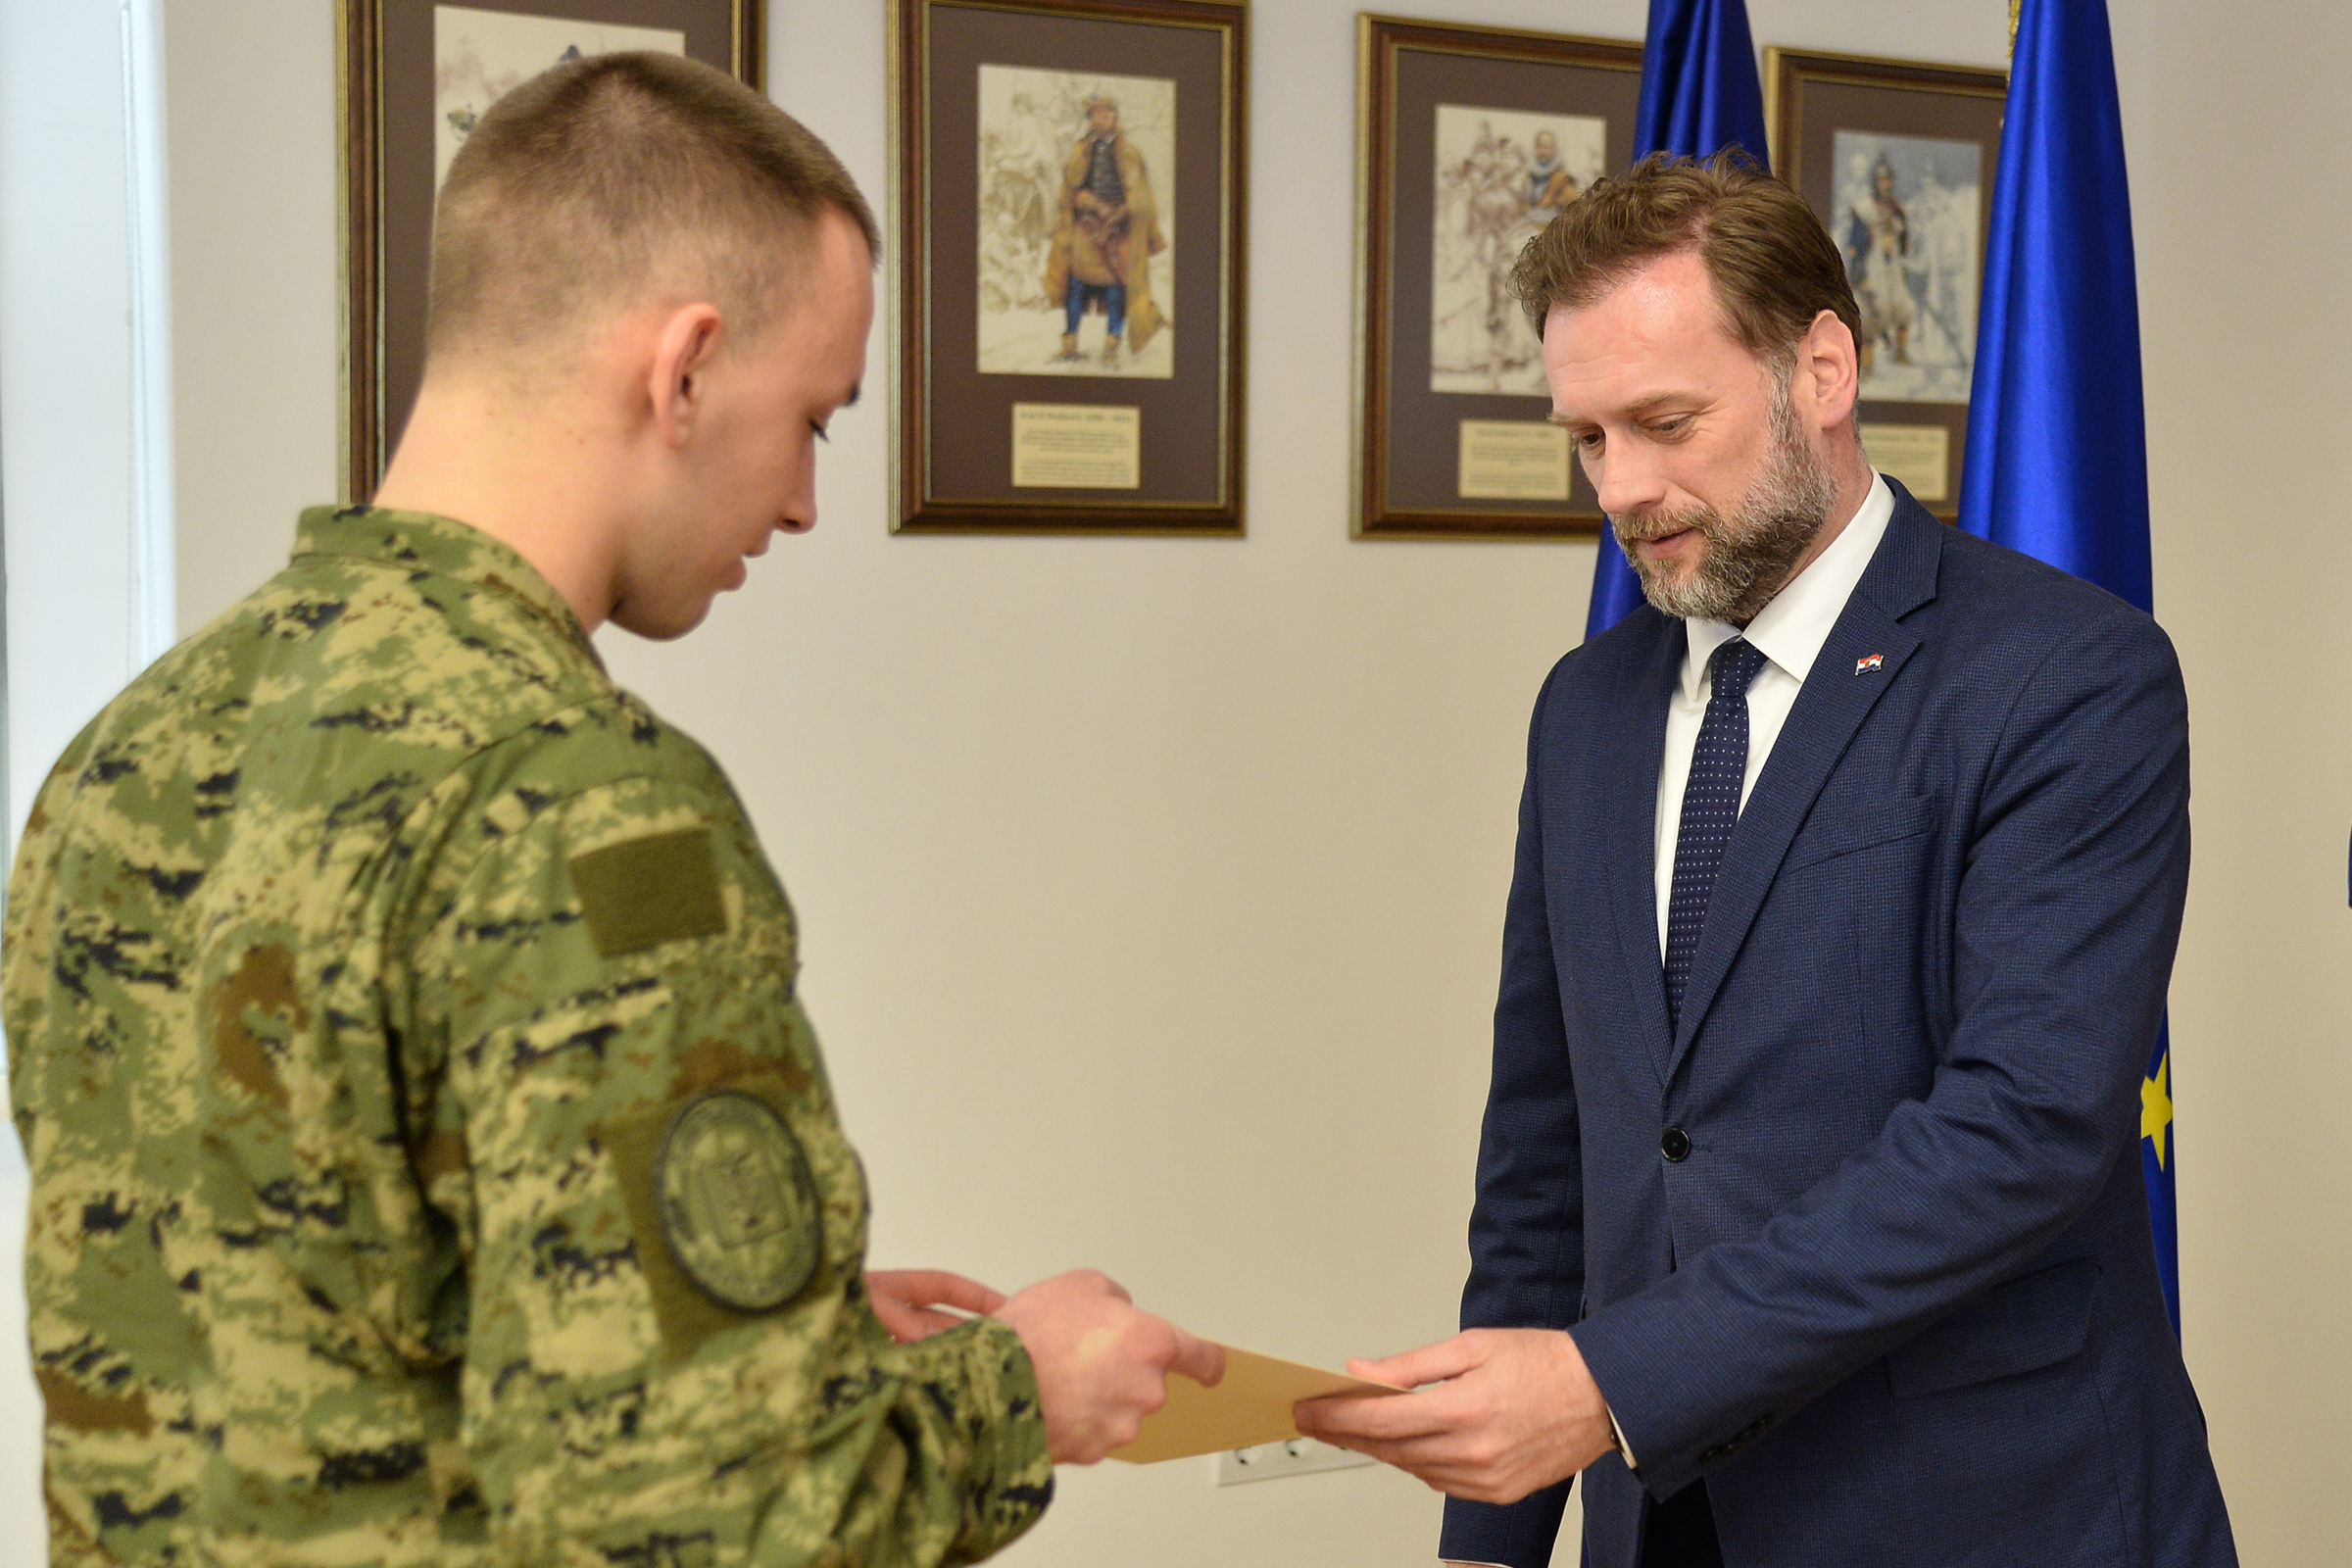 Ministar Banožić uručio rješenja o prijmu u vojnu službu časnicima zdravstvene službe